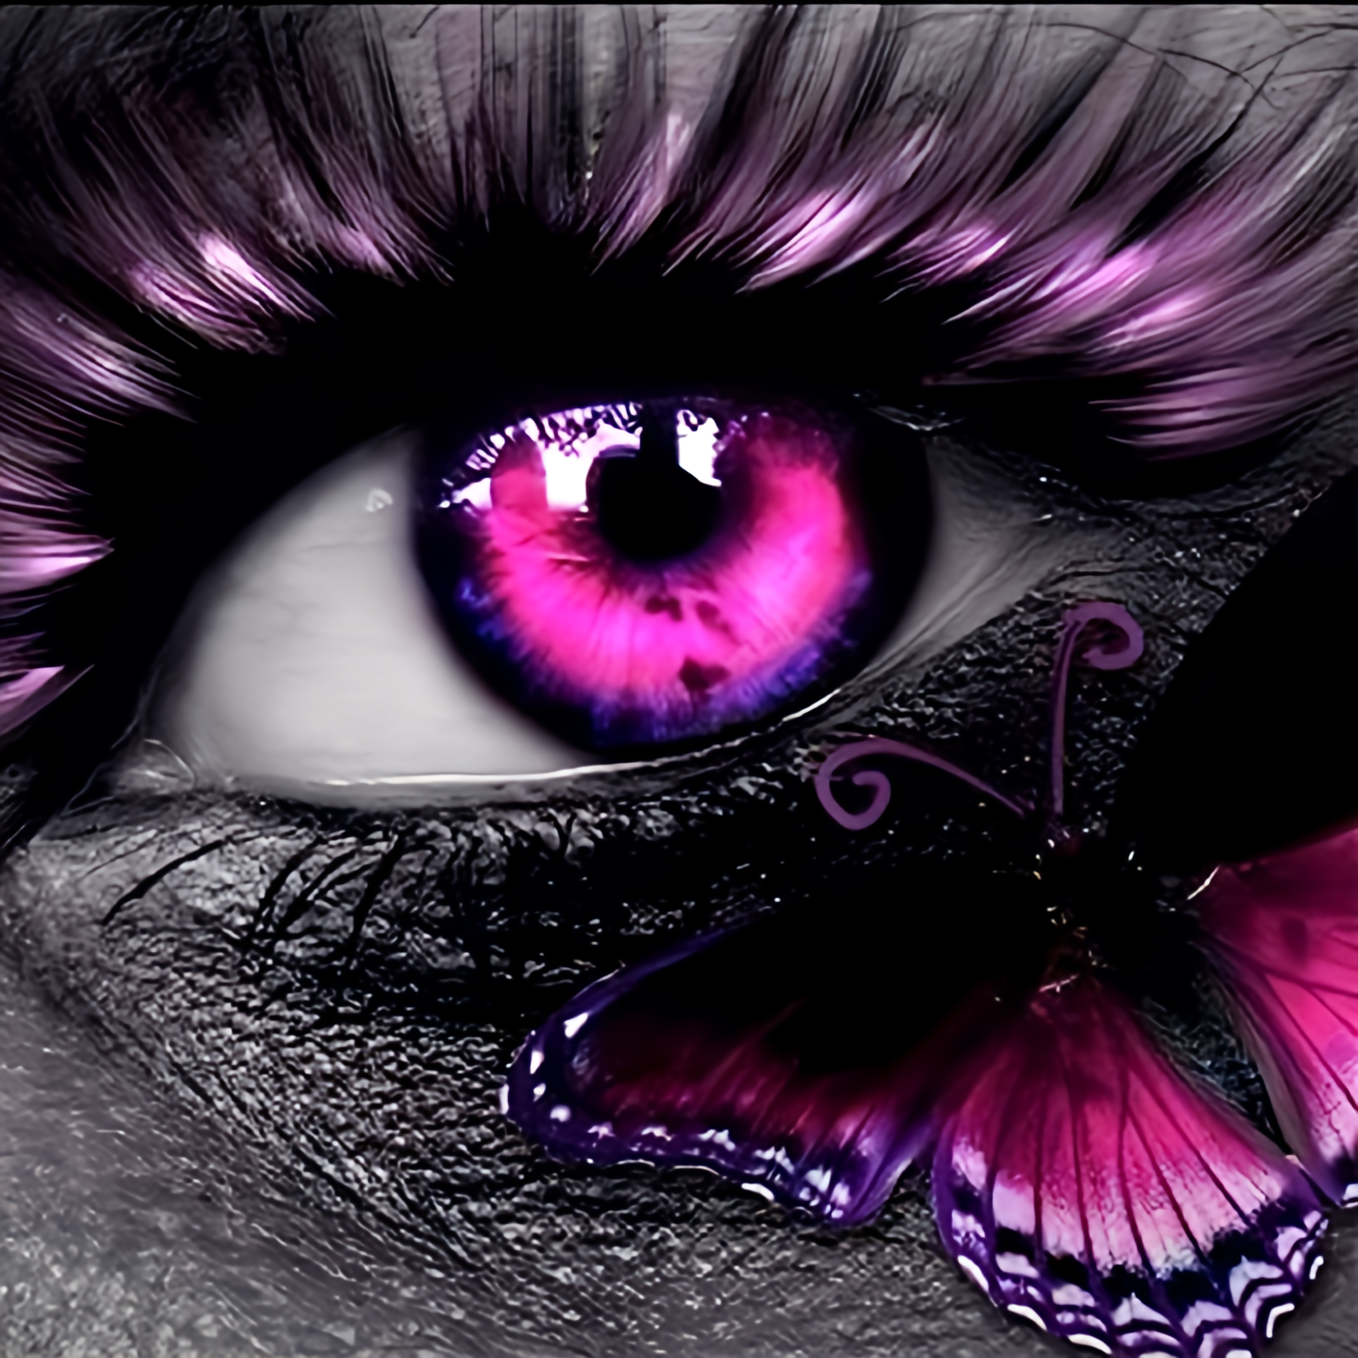 Juni | Butterfly Eye mit AB Farben